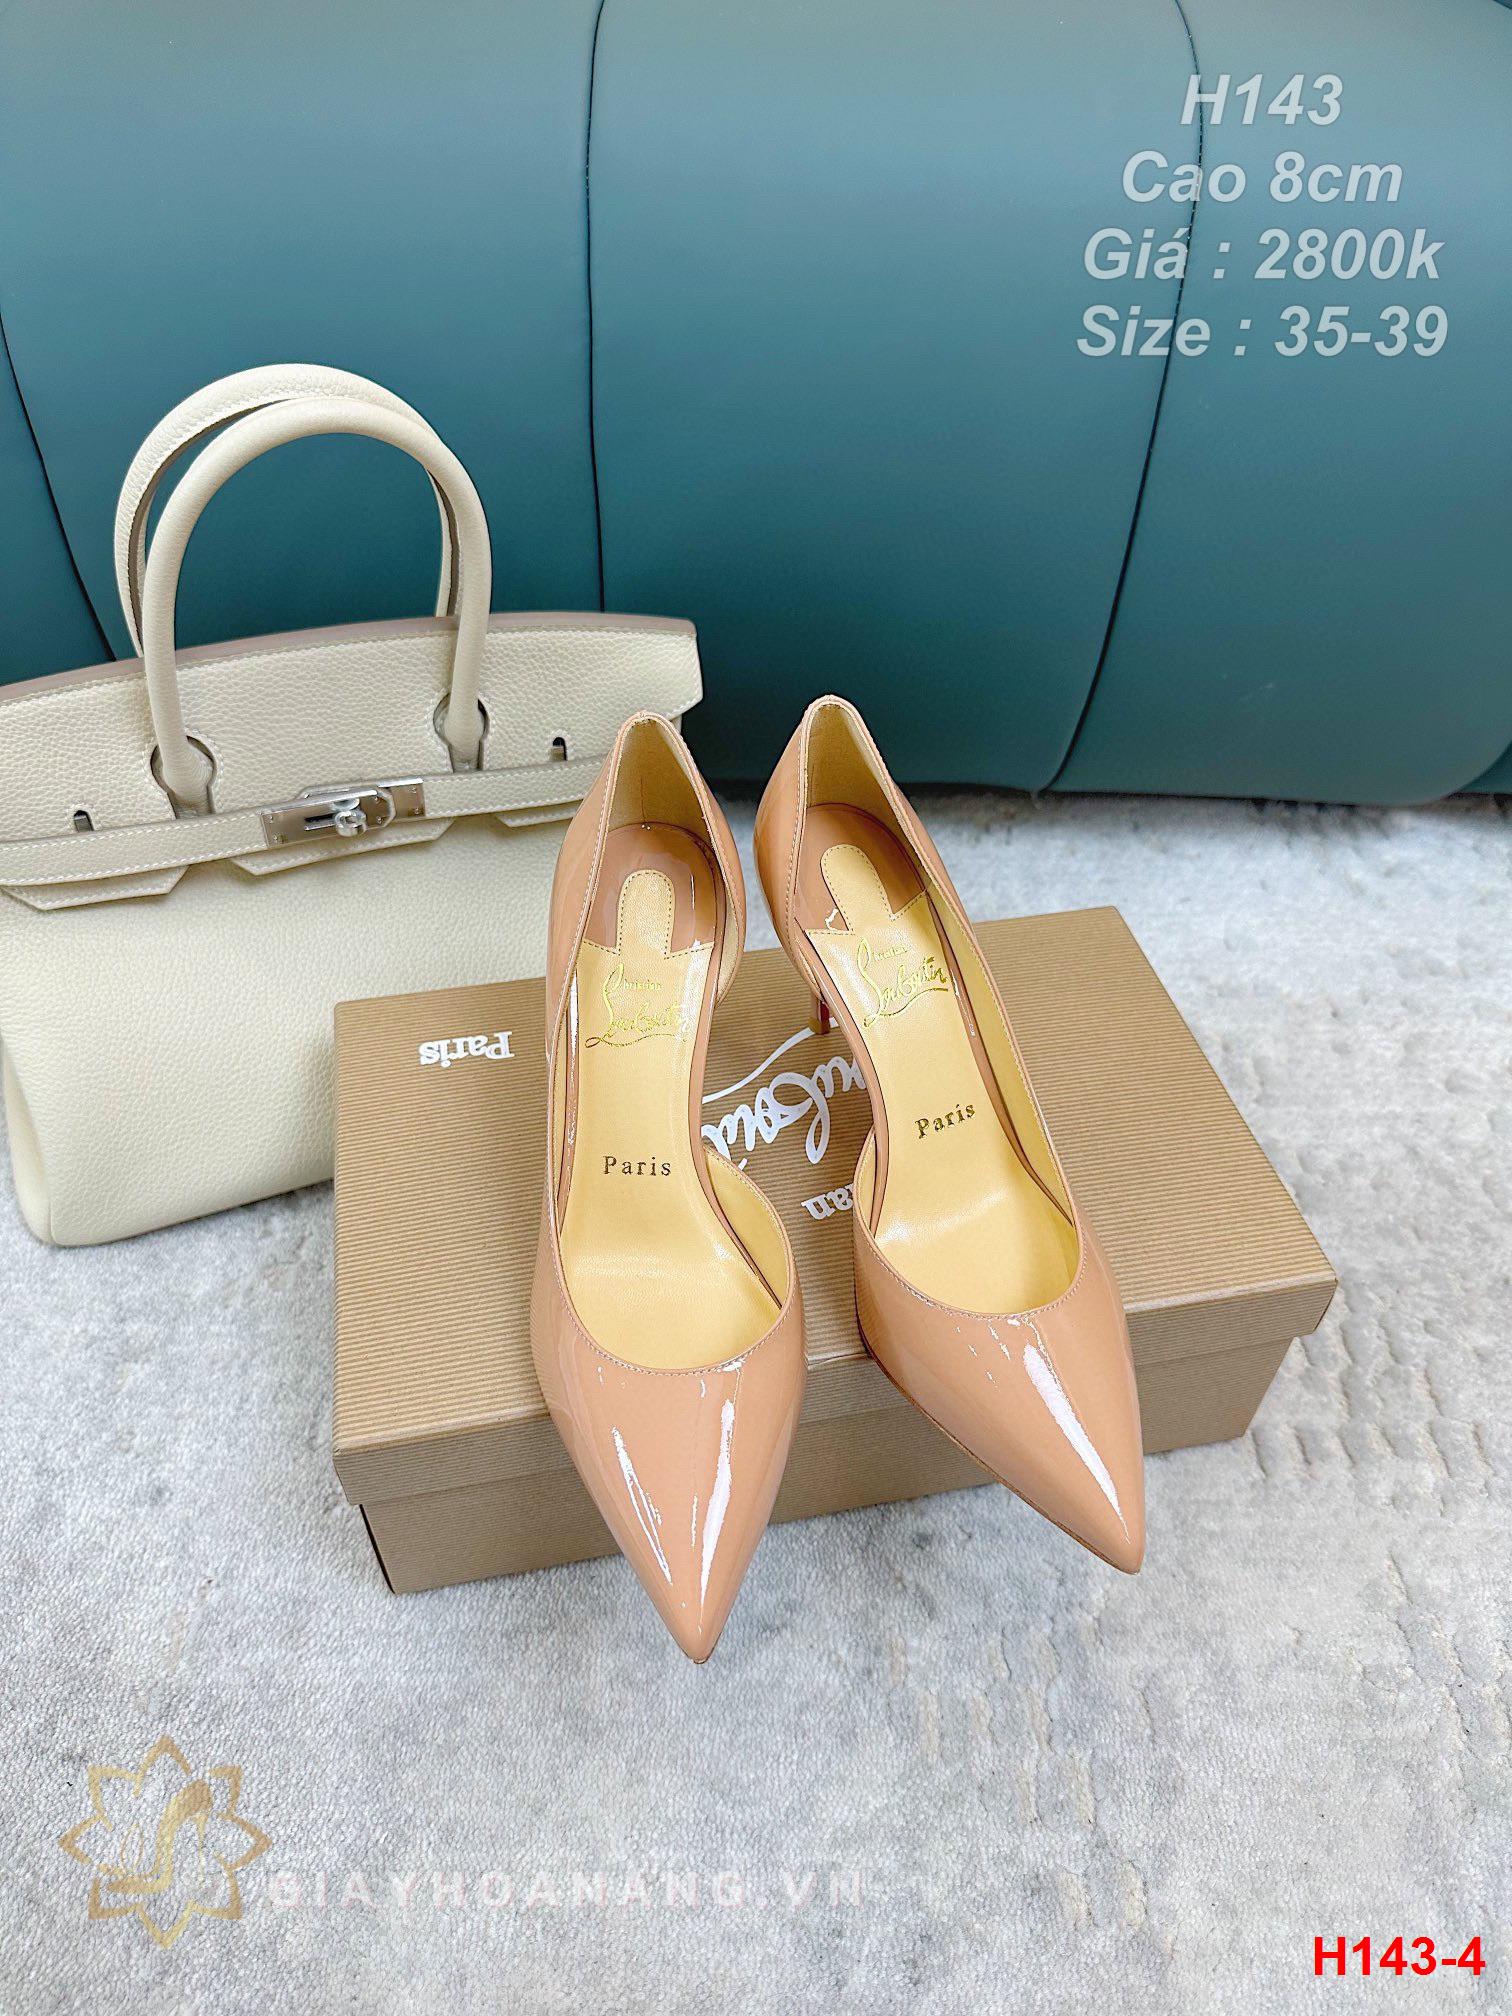 H143-4 Louboutin giày cao gót 8cm siêu cấp